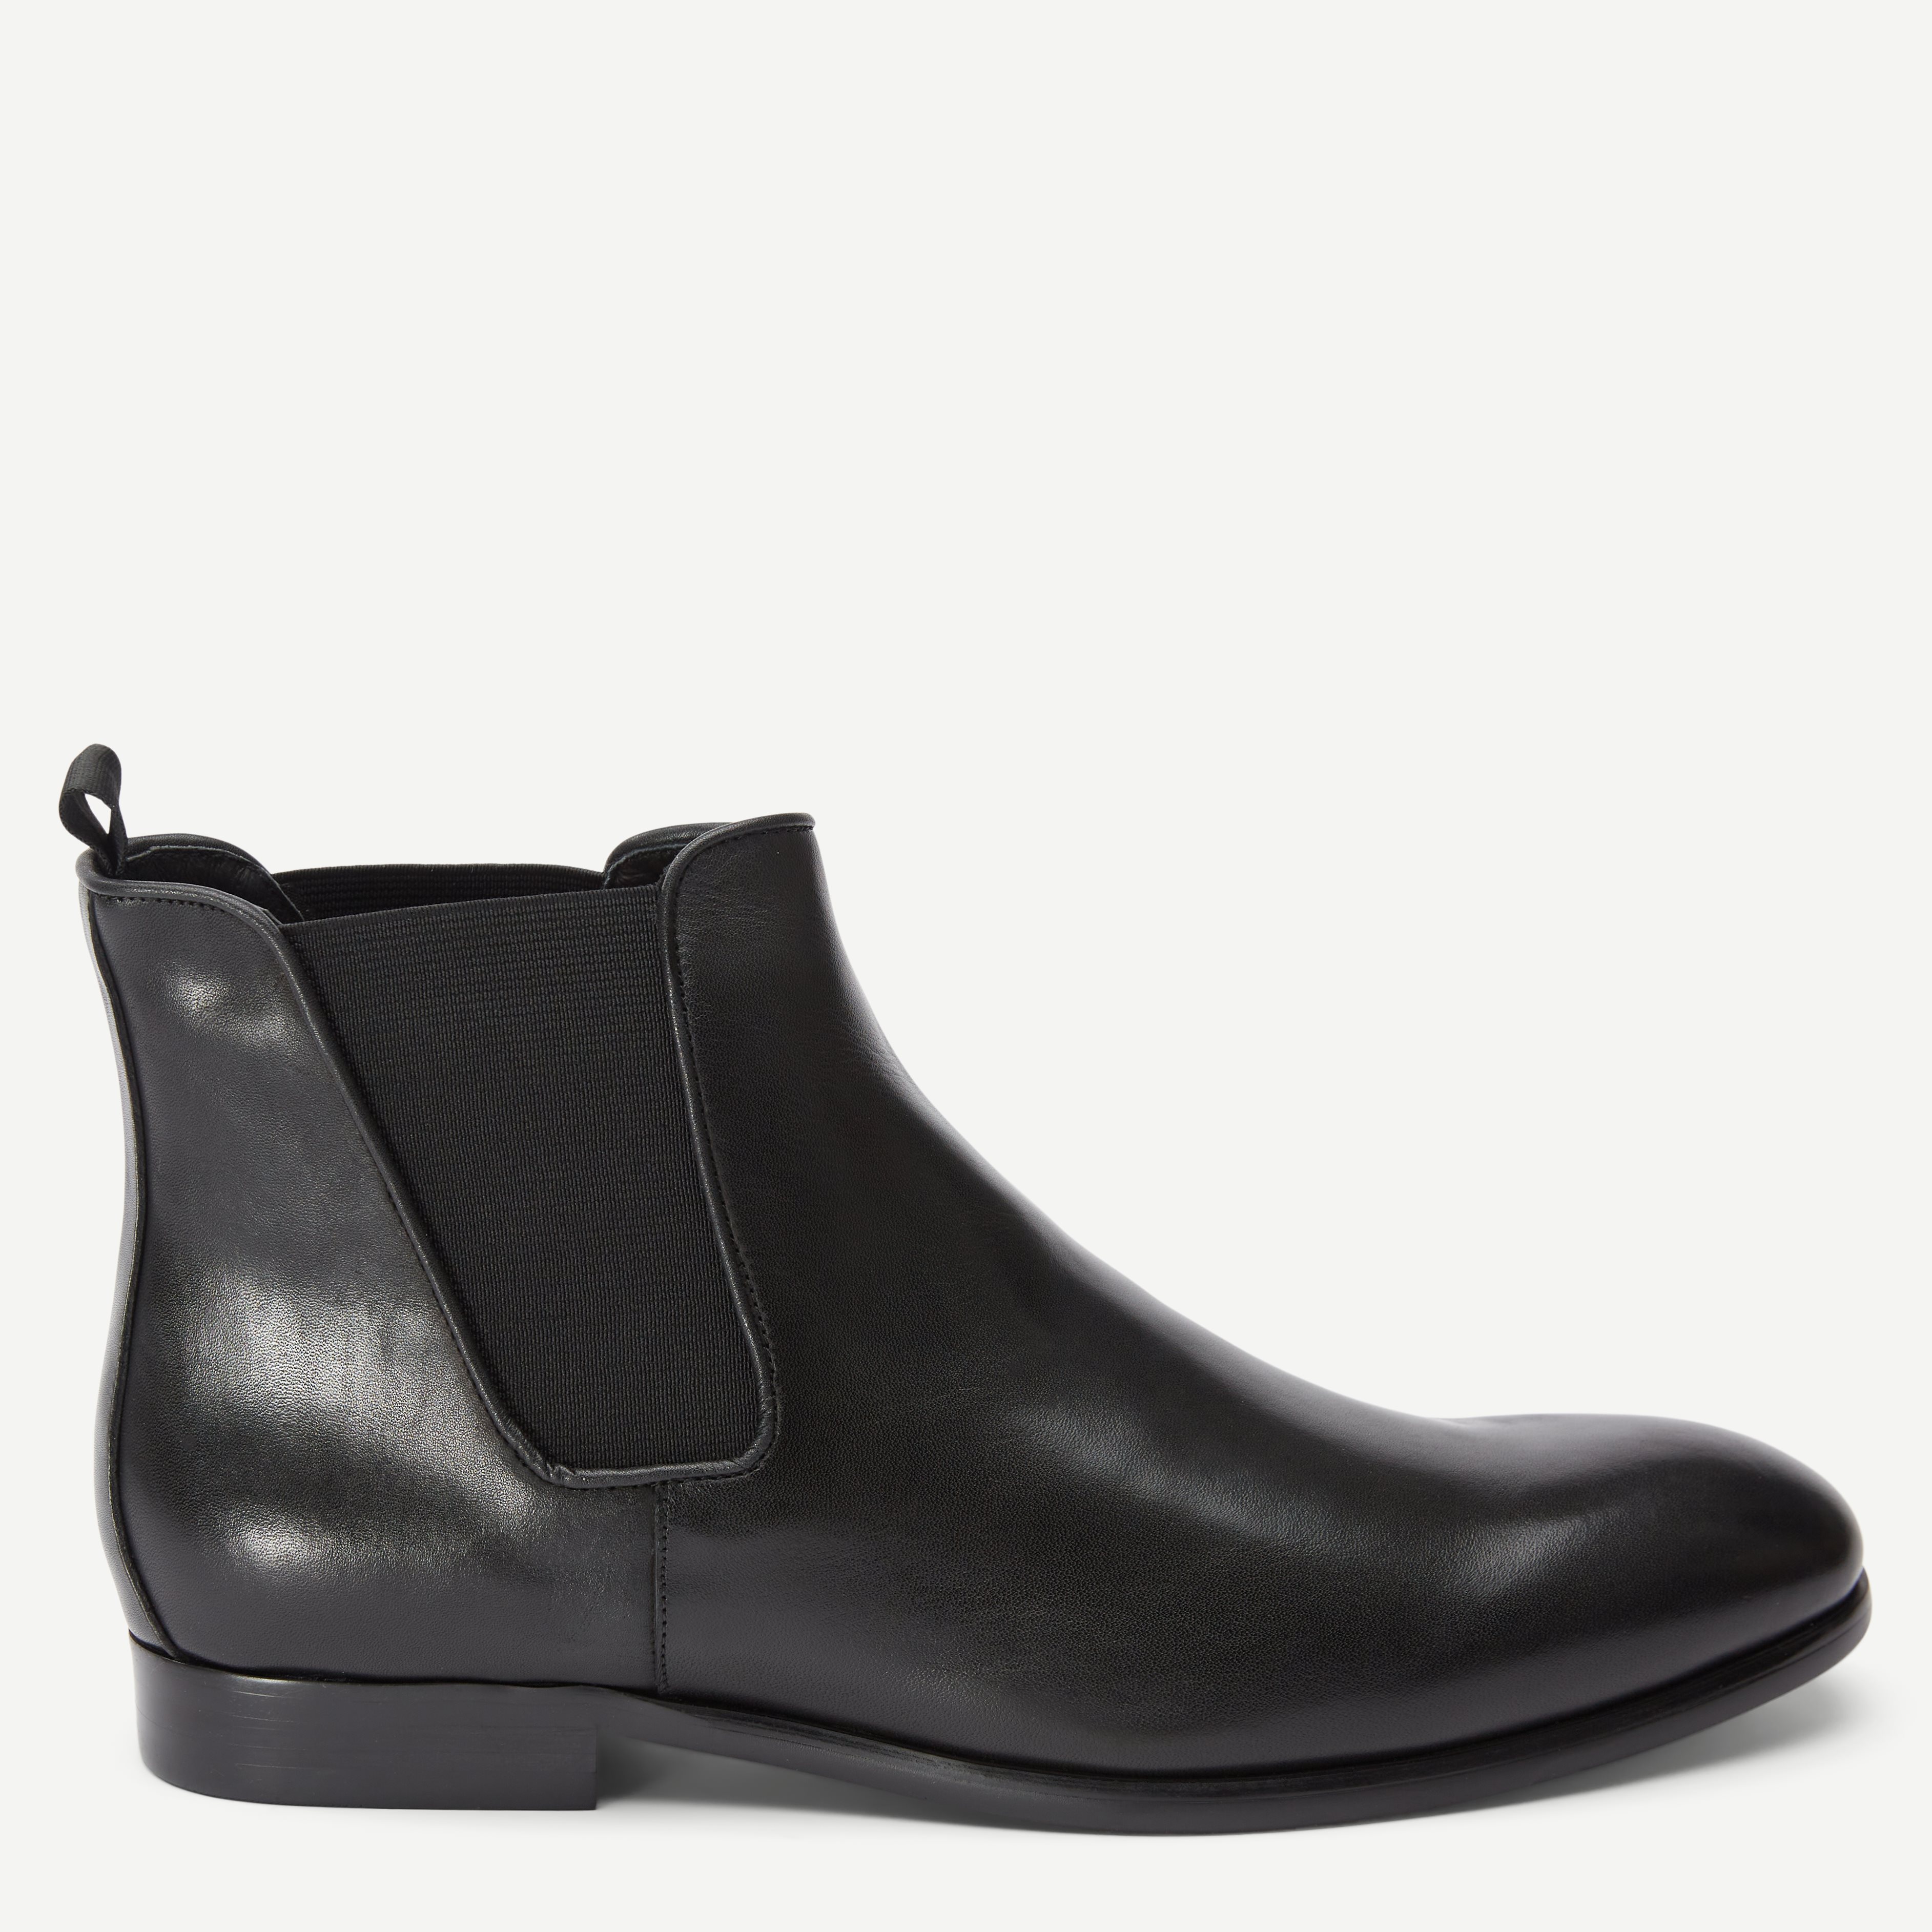 Ahler Shoes 1831 Black